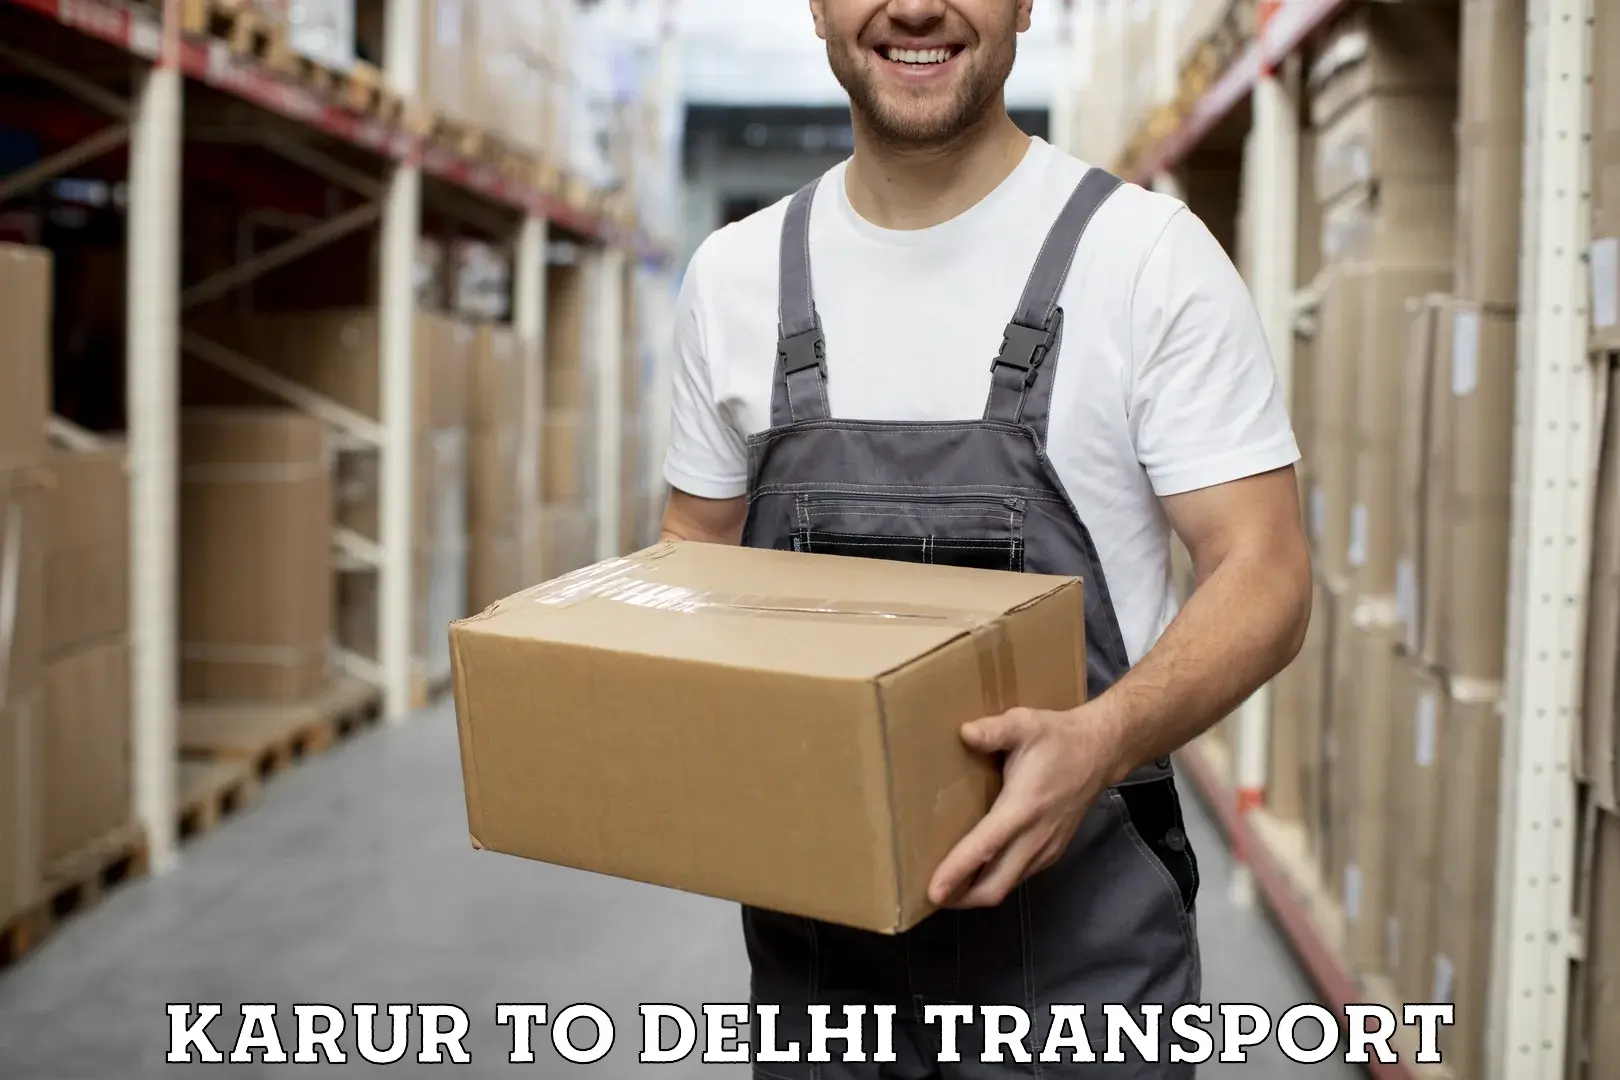 Pick up transport service Karur to Delhi